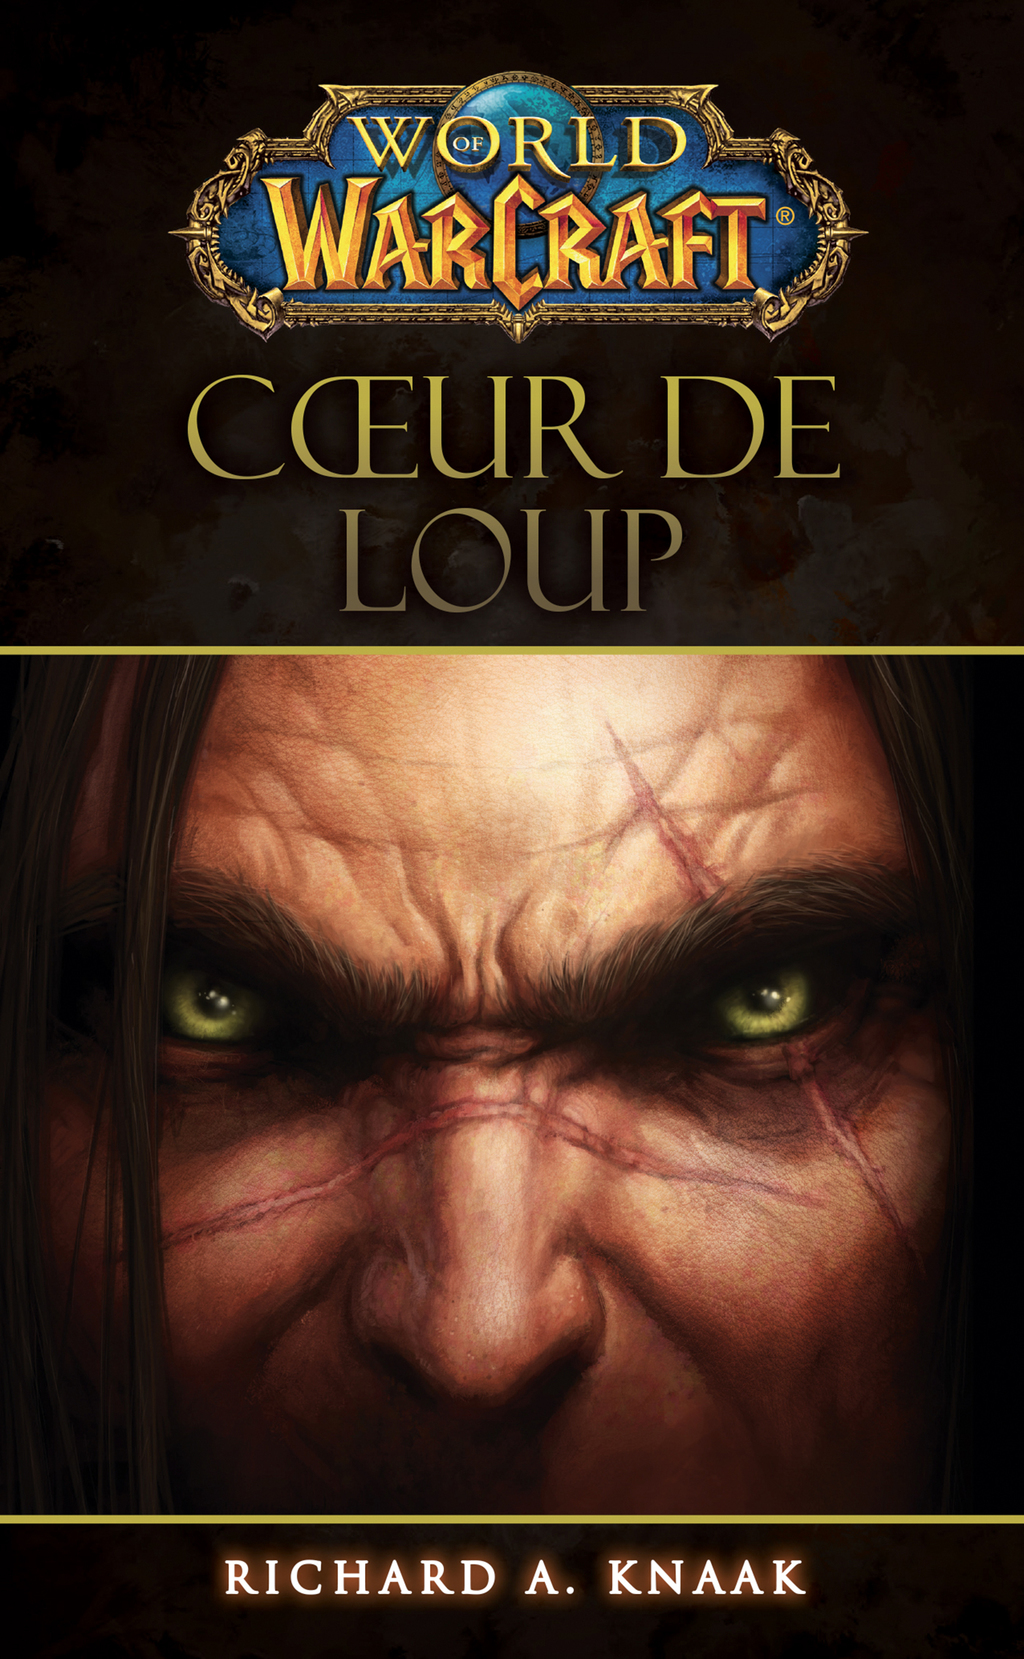 World of Warcraft - Coeur de loup (eBook) - Richard A Knaak,